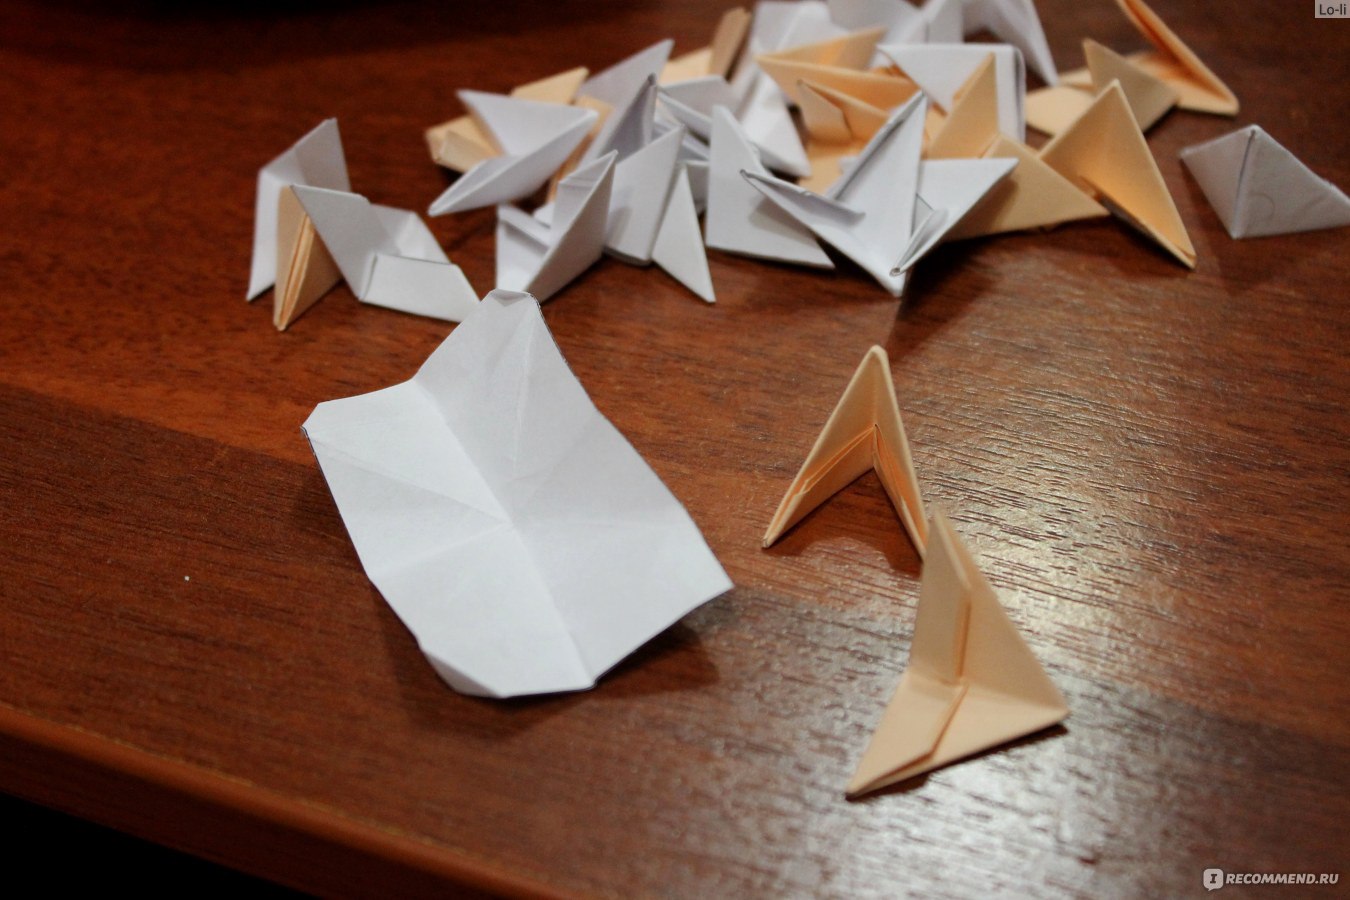 Снежинки-оригами к Новому году